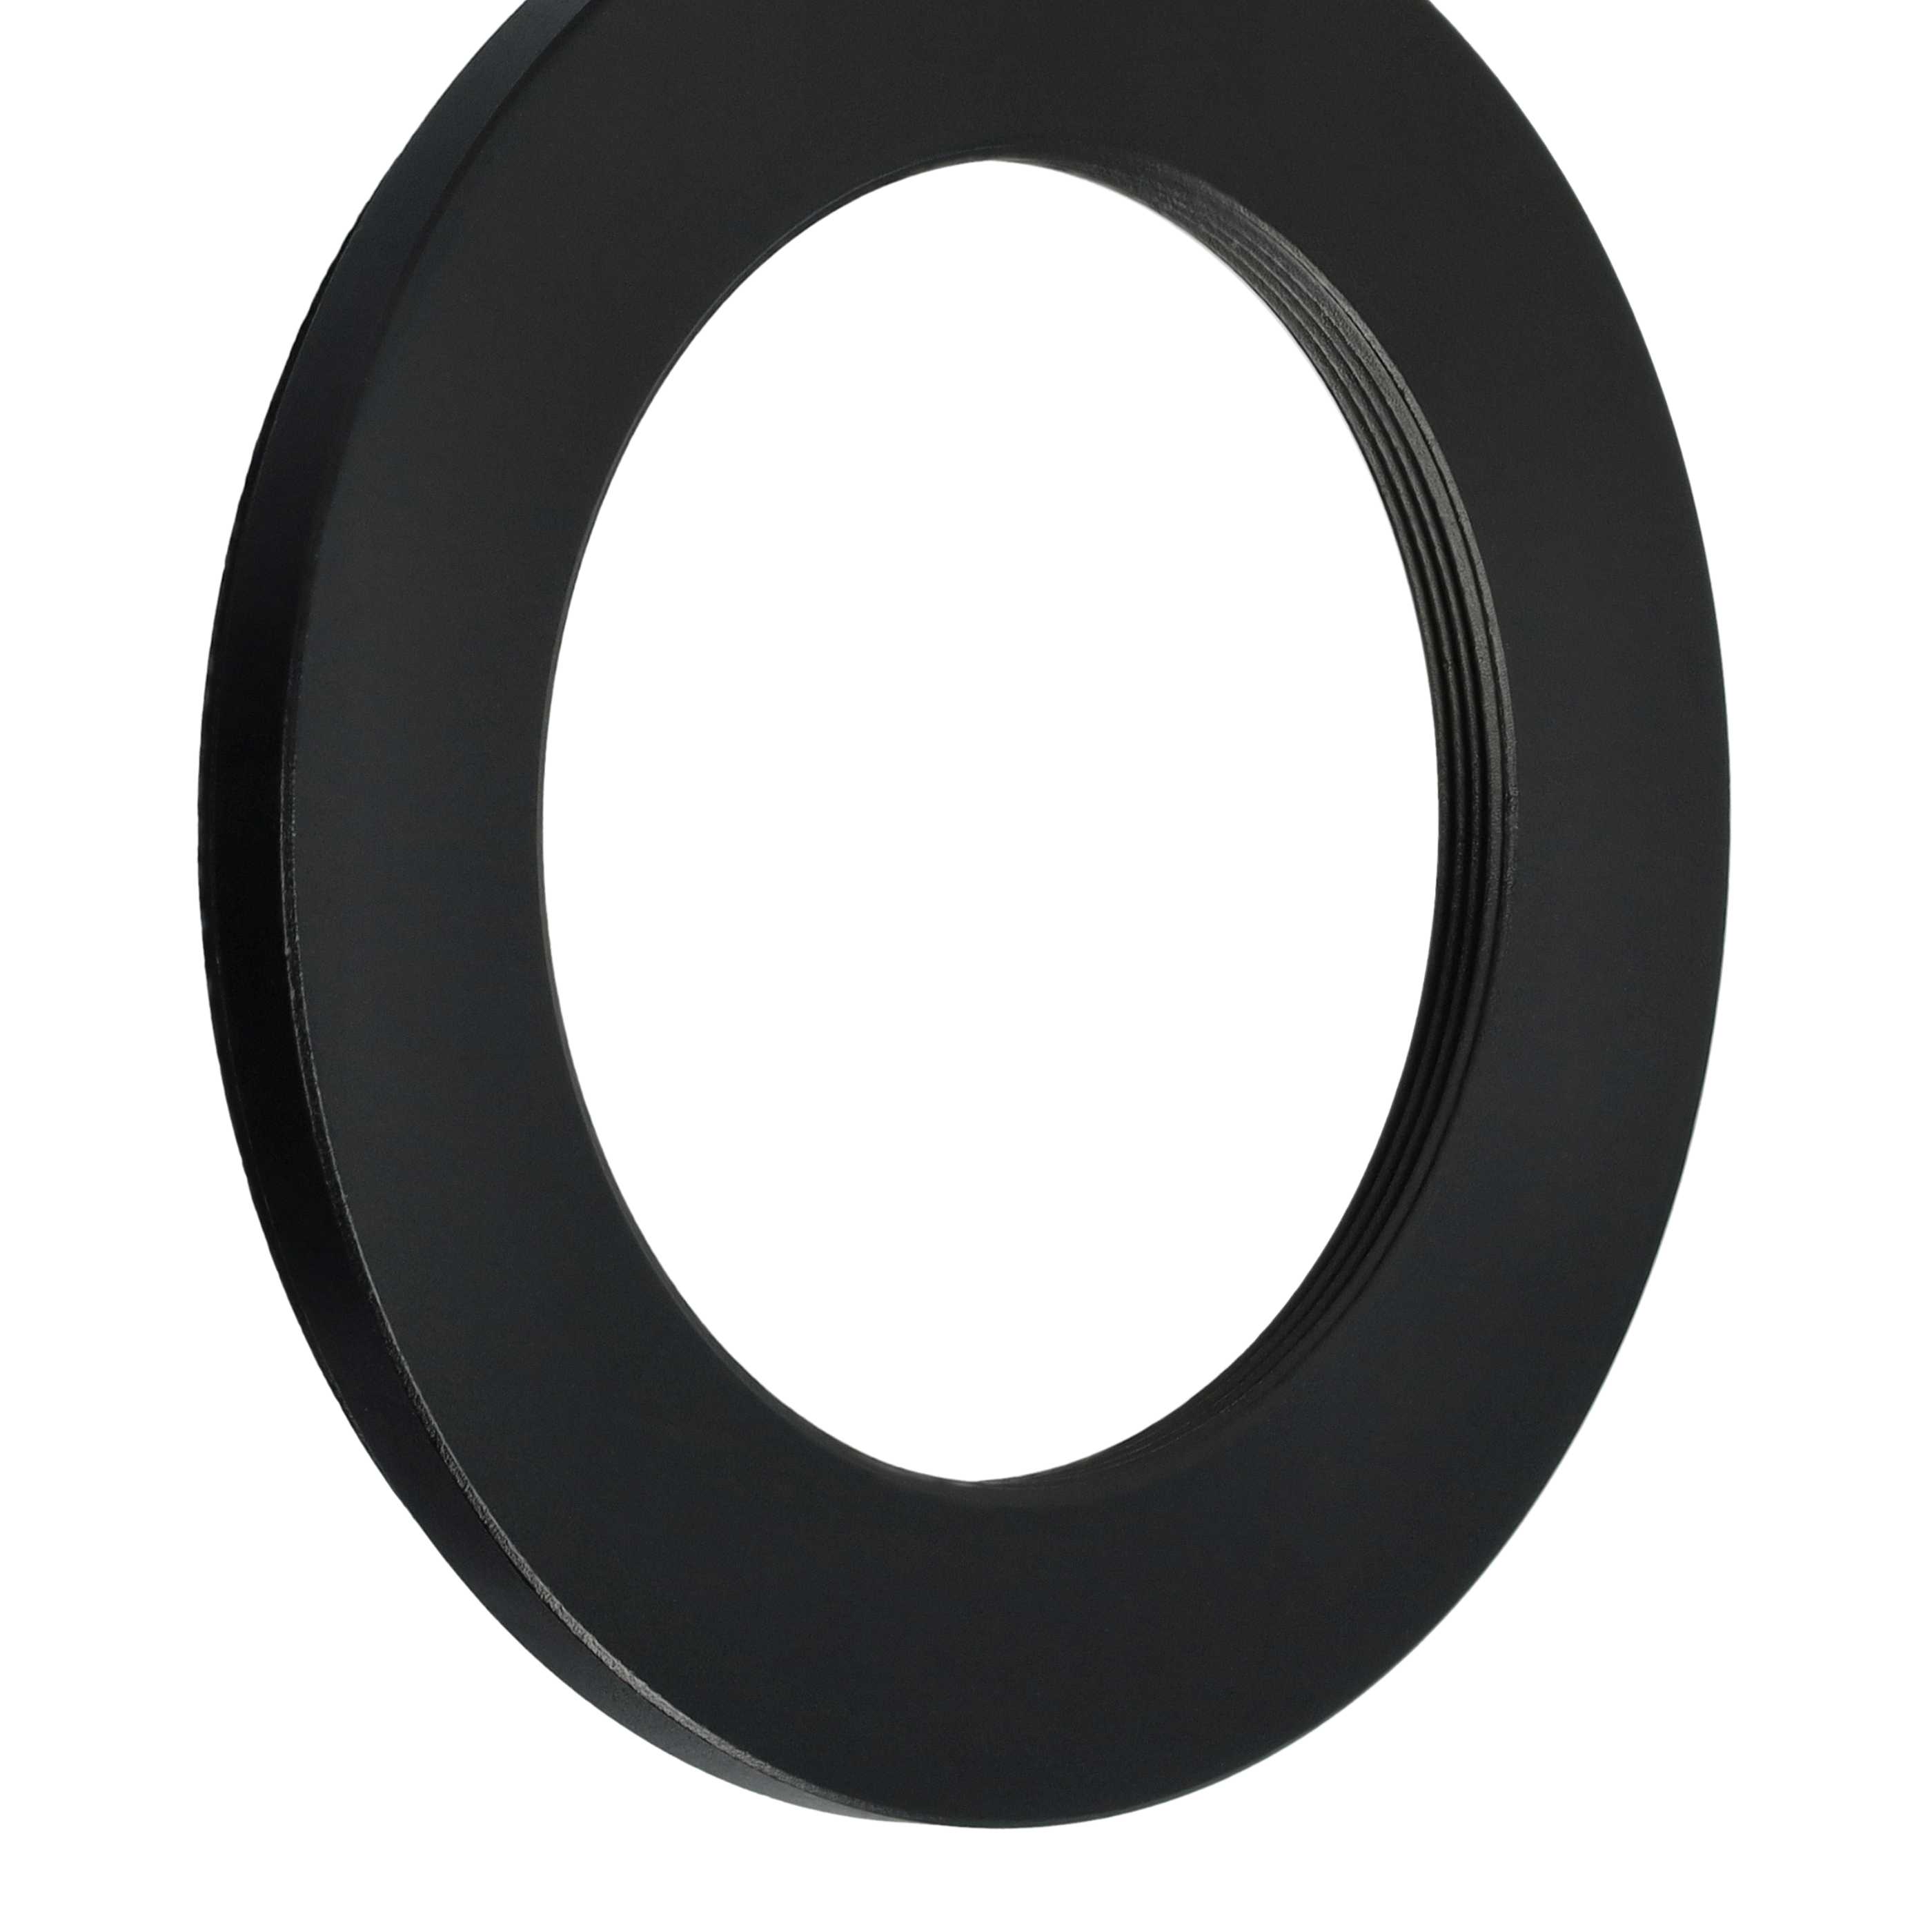 Step-Down-Ring Adapter von 62 mm auf 43 mm passend für Kamera Objektiv - Filteradapter, Metall, schwarz